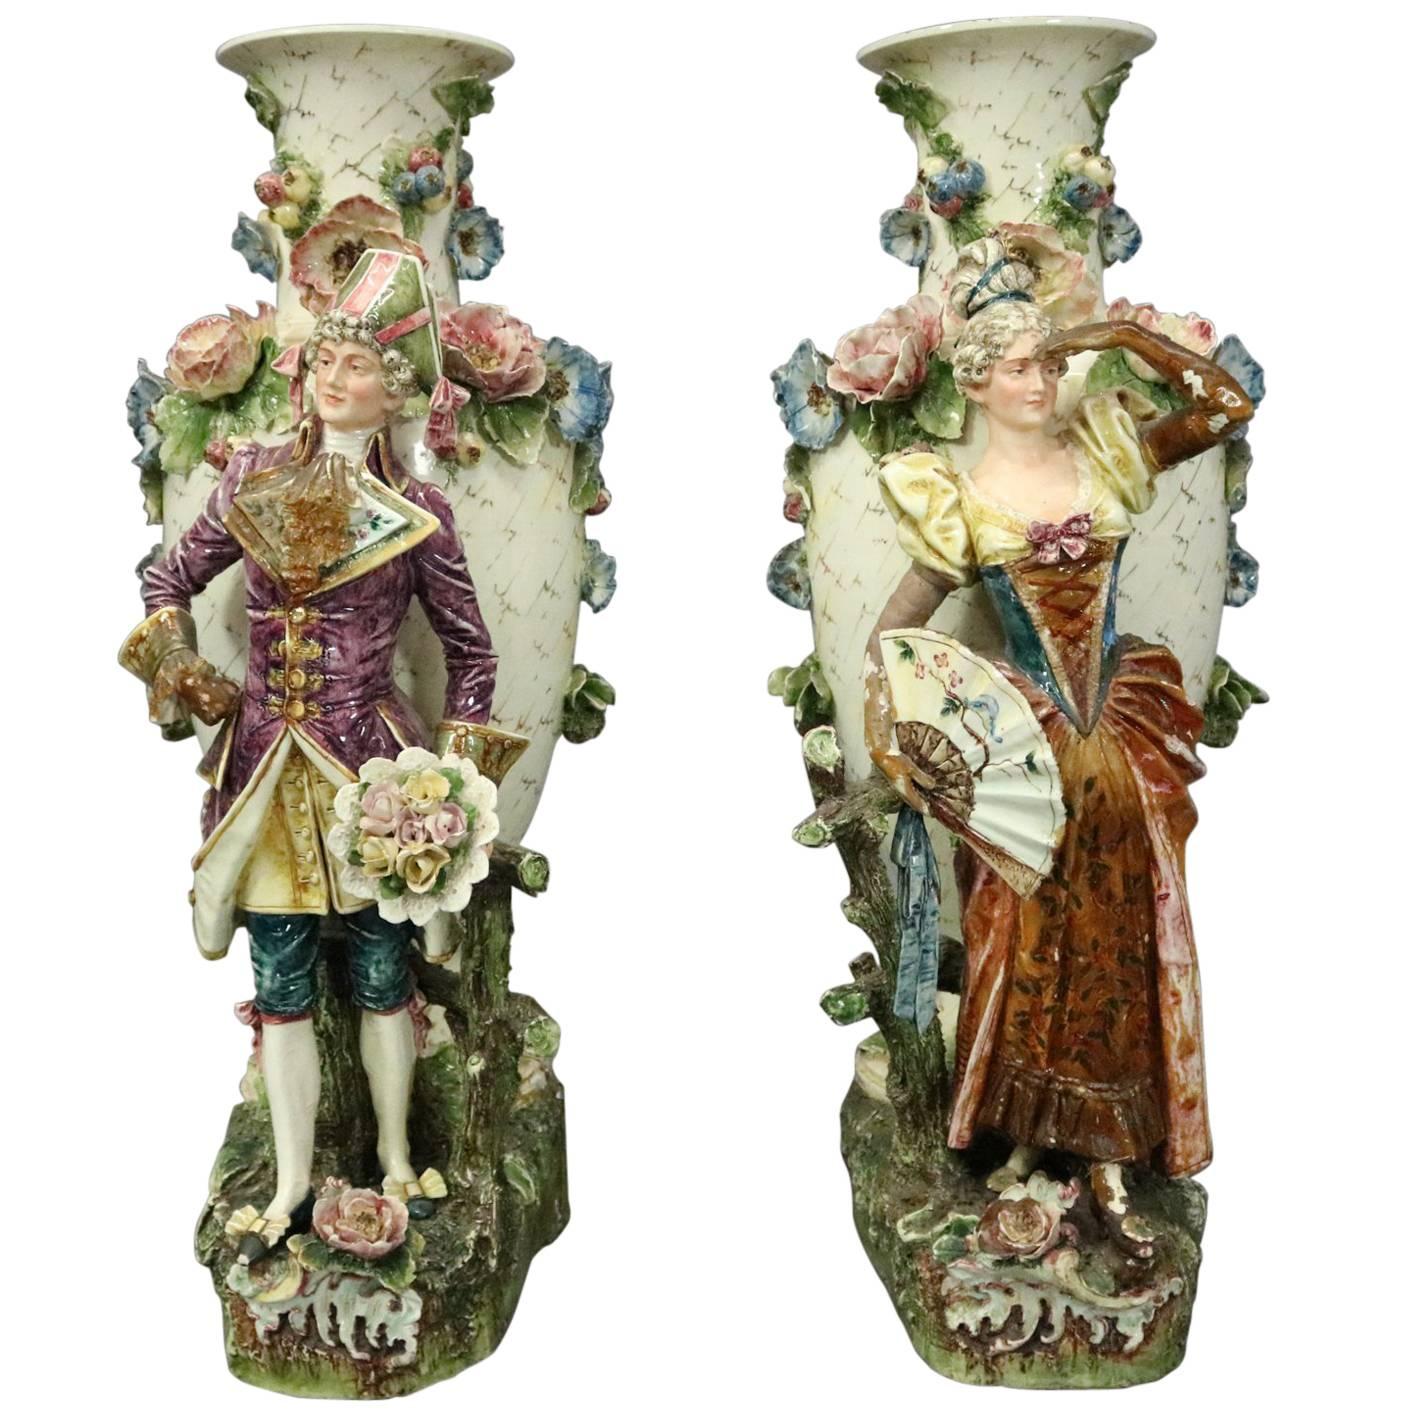 Pair of Antique Monumental Austrian Majolica Figural Floor Vase Sculptures